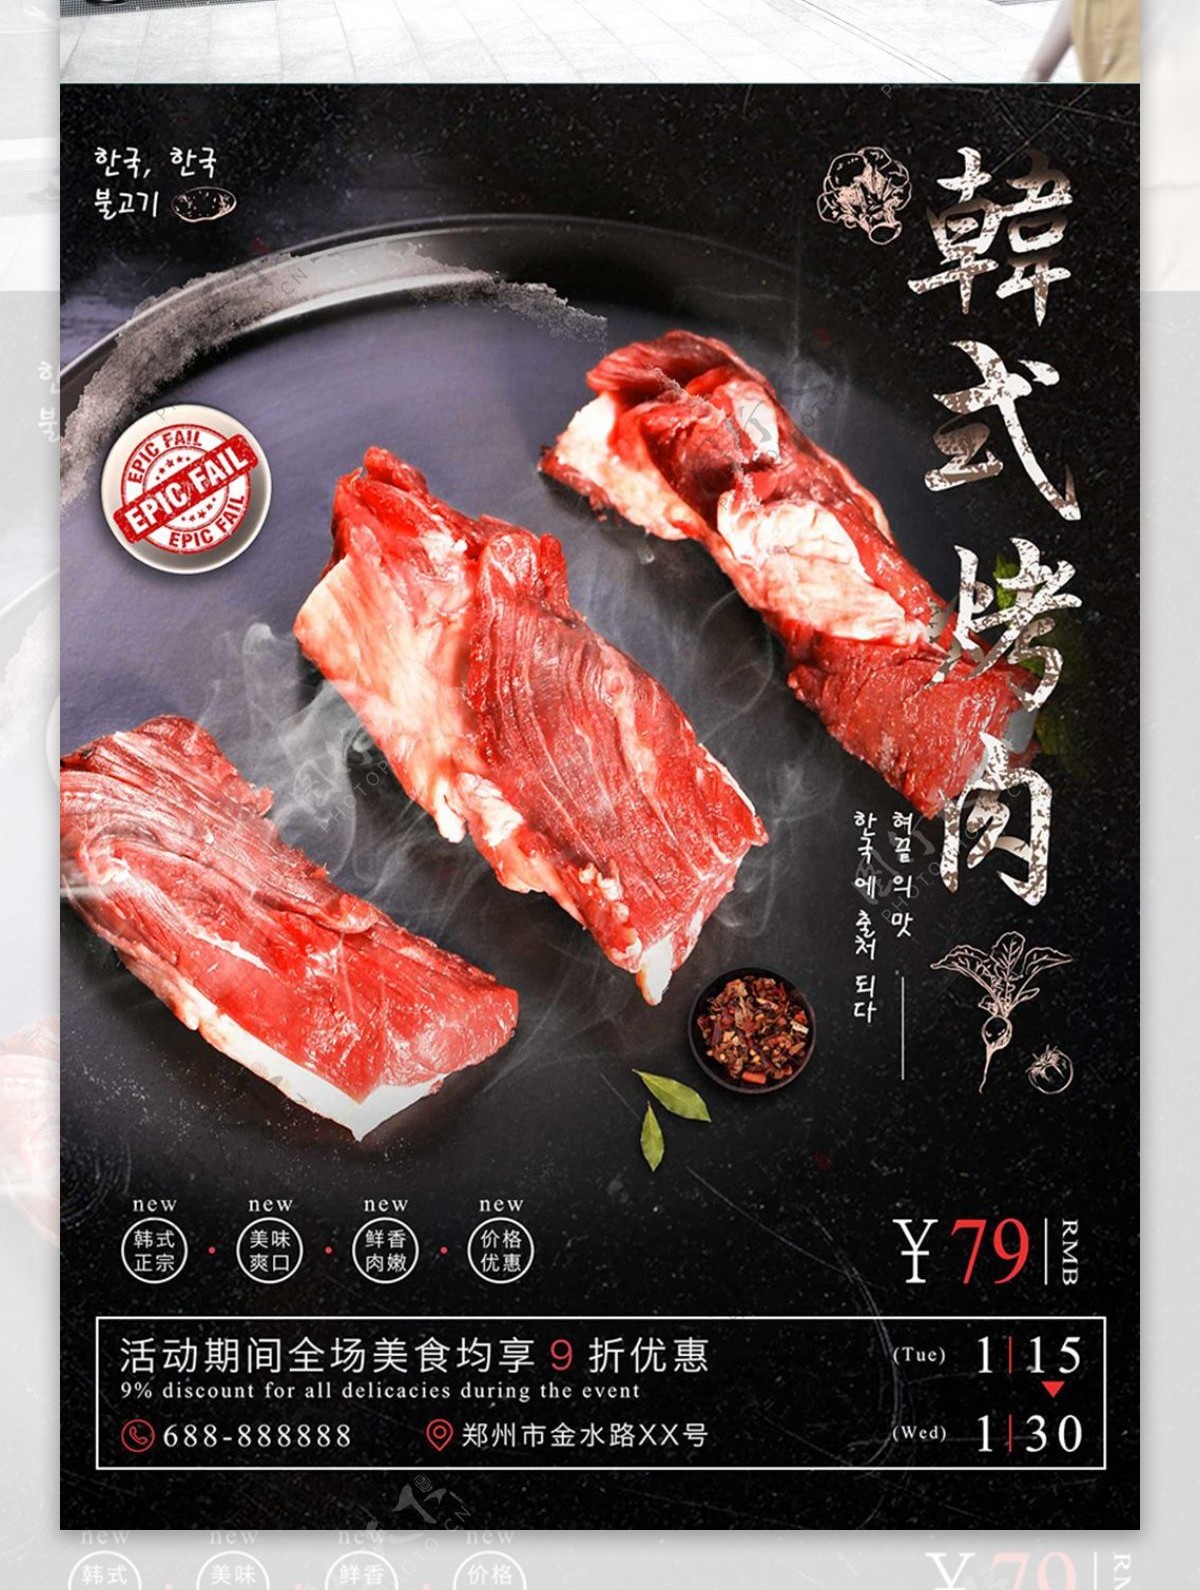 简约黑色质感韩式烤肉美食海报